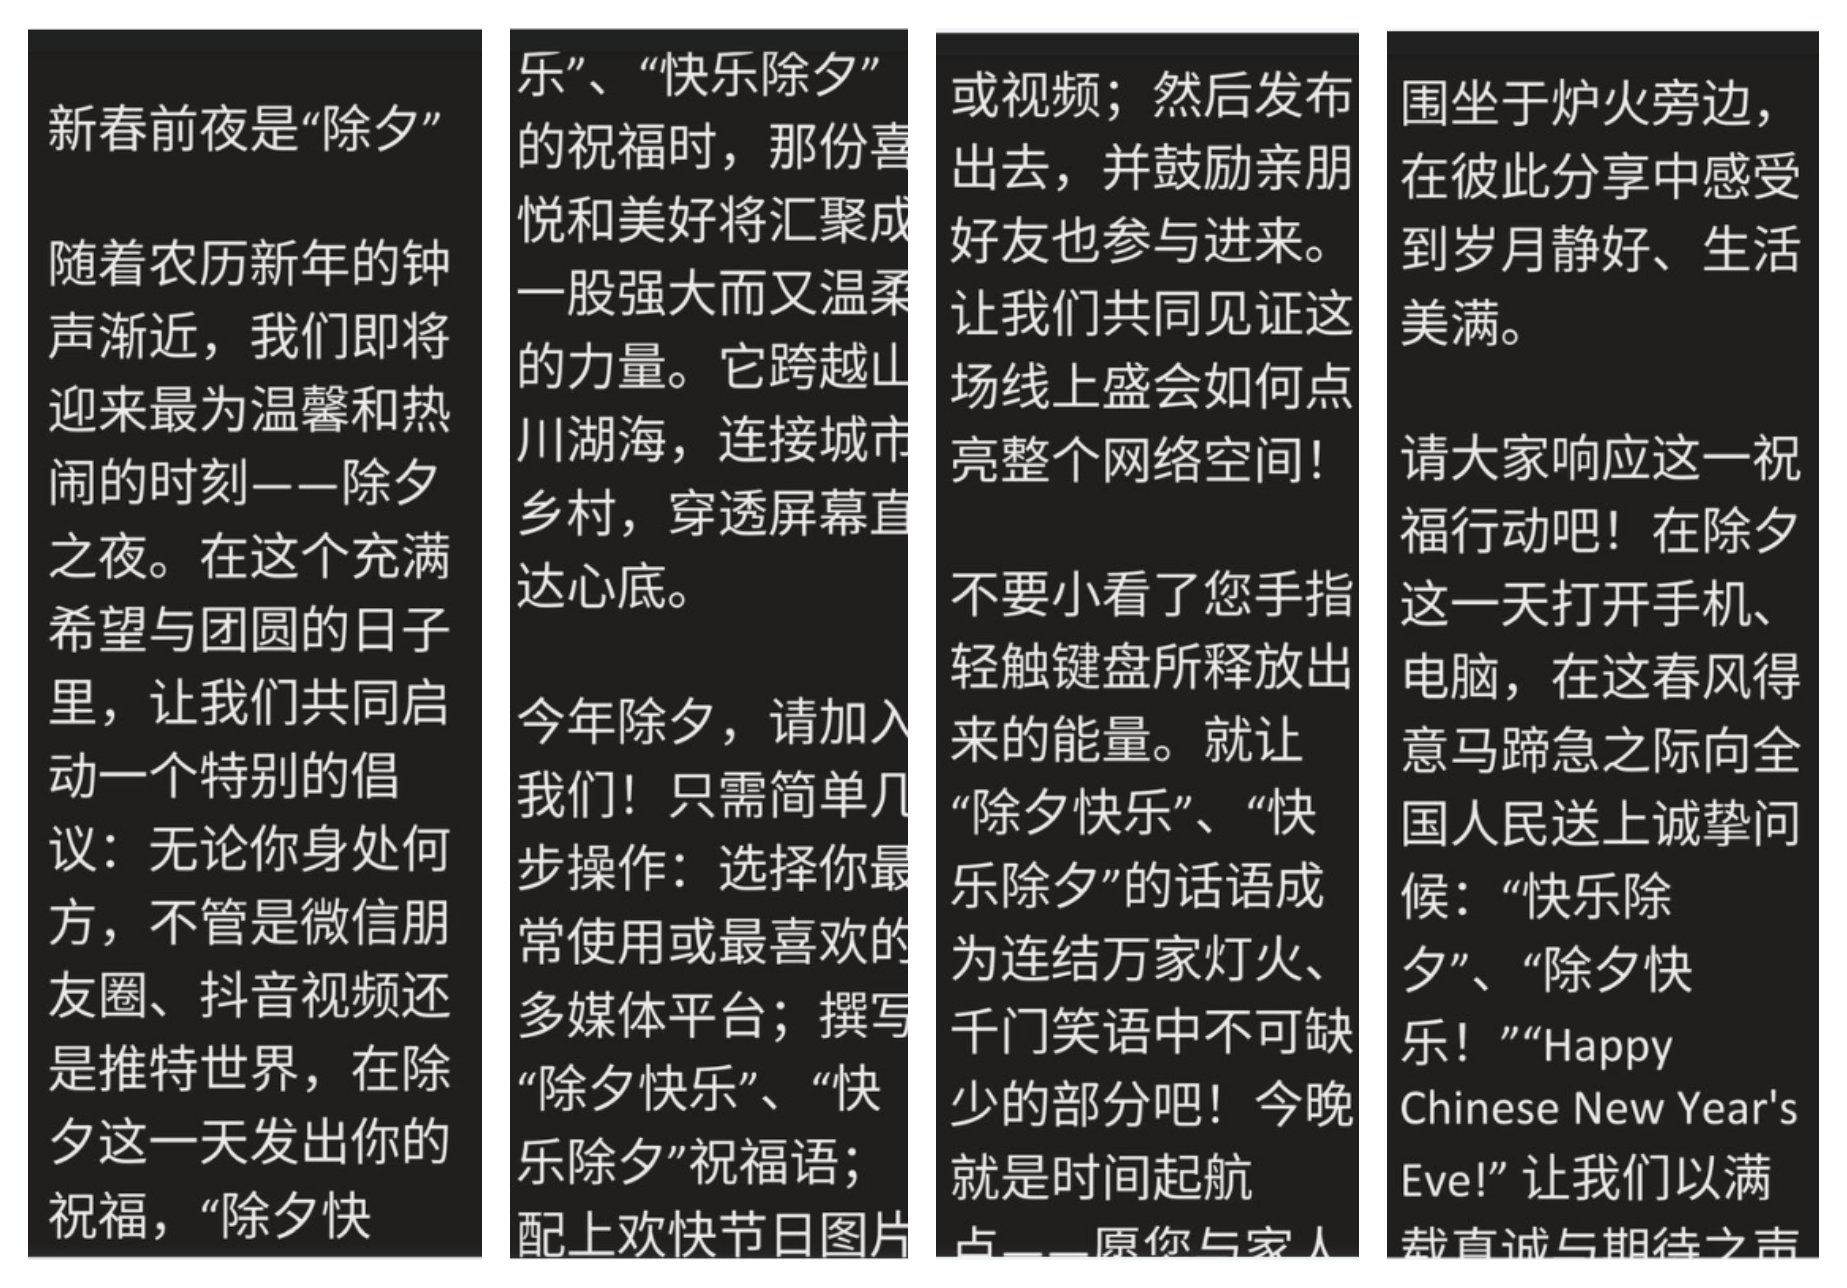 Một số người dân Trung Quốc đang khởi xướng một sáng kiến ​​đặc biệt: Bất kể quý vị ở đâu, cho dù đó là nhóm WeChat, video TikTok hay Twitter, hãy gửi lời chúc phúc của quý vị vào đêm giao thừa như “Trừ tịch vui vẻ,” “Vui vẻ trừ tịch.” (Ảnh: Epoch Times)